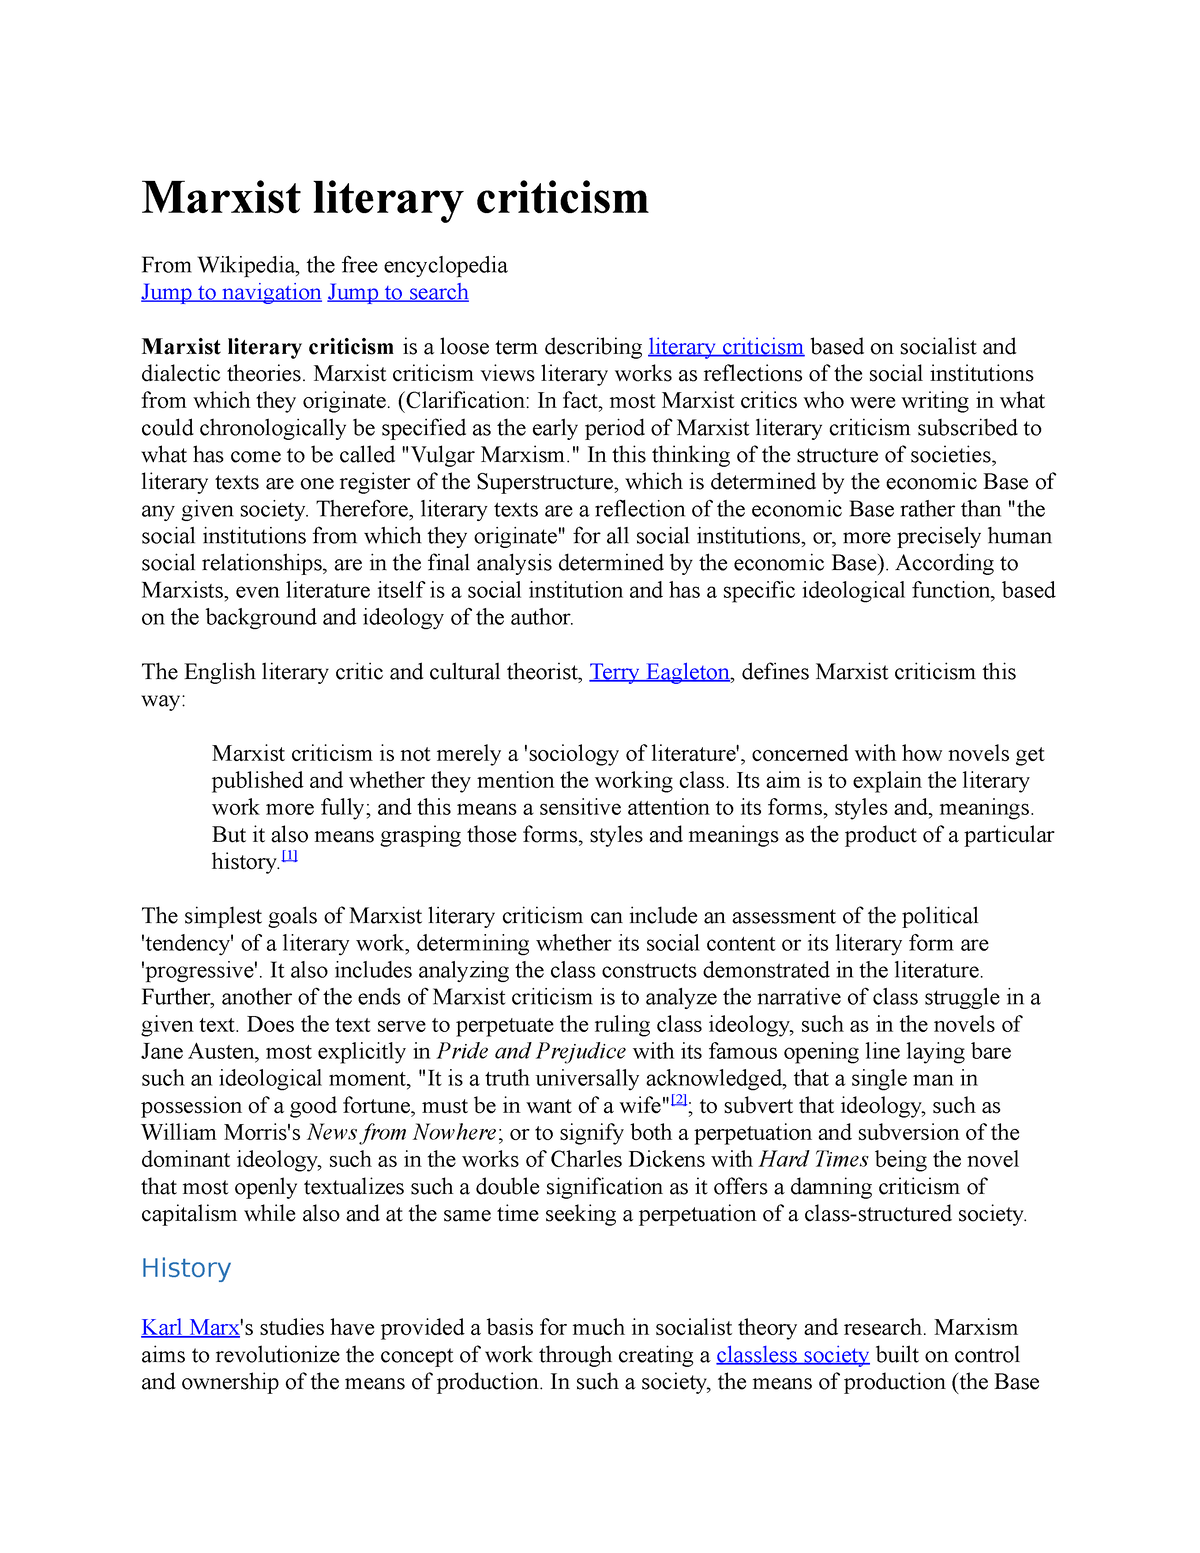 essay of marxist criticism